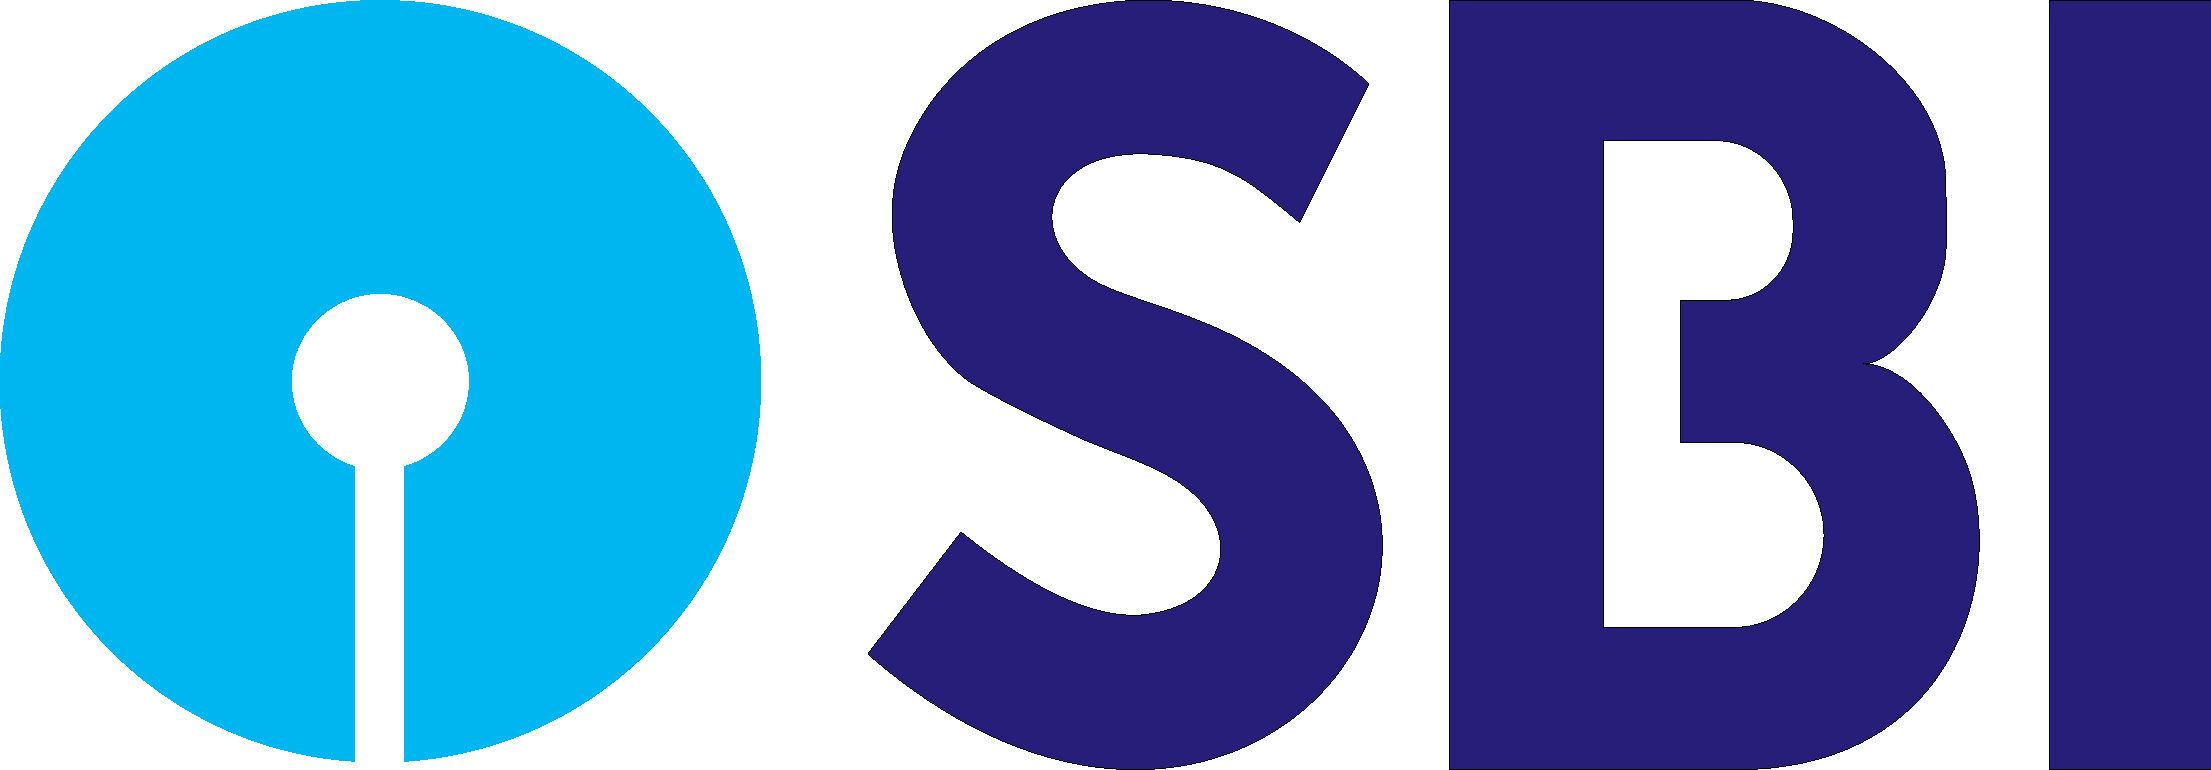 Sbi_logo_PNG1